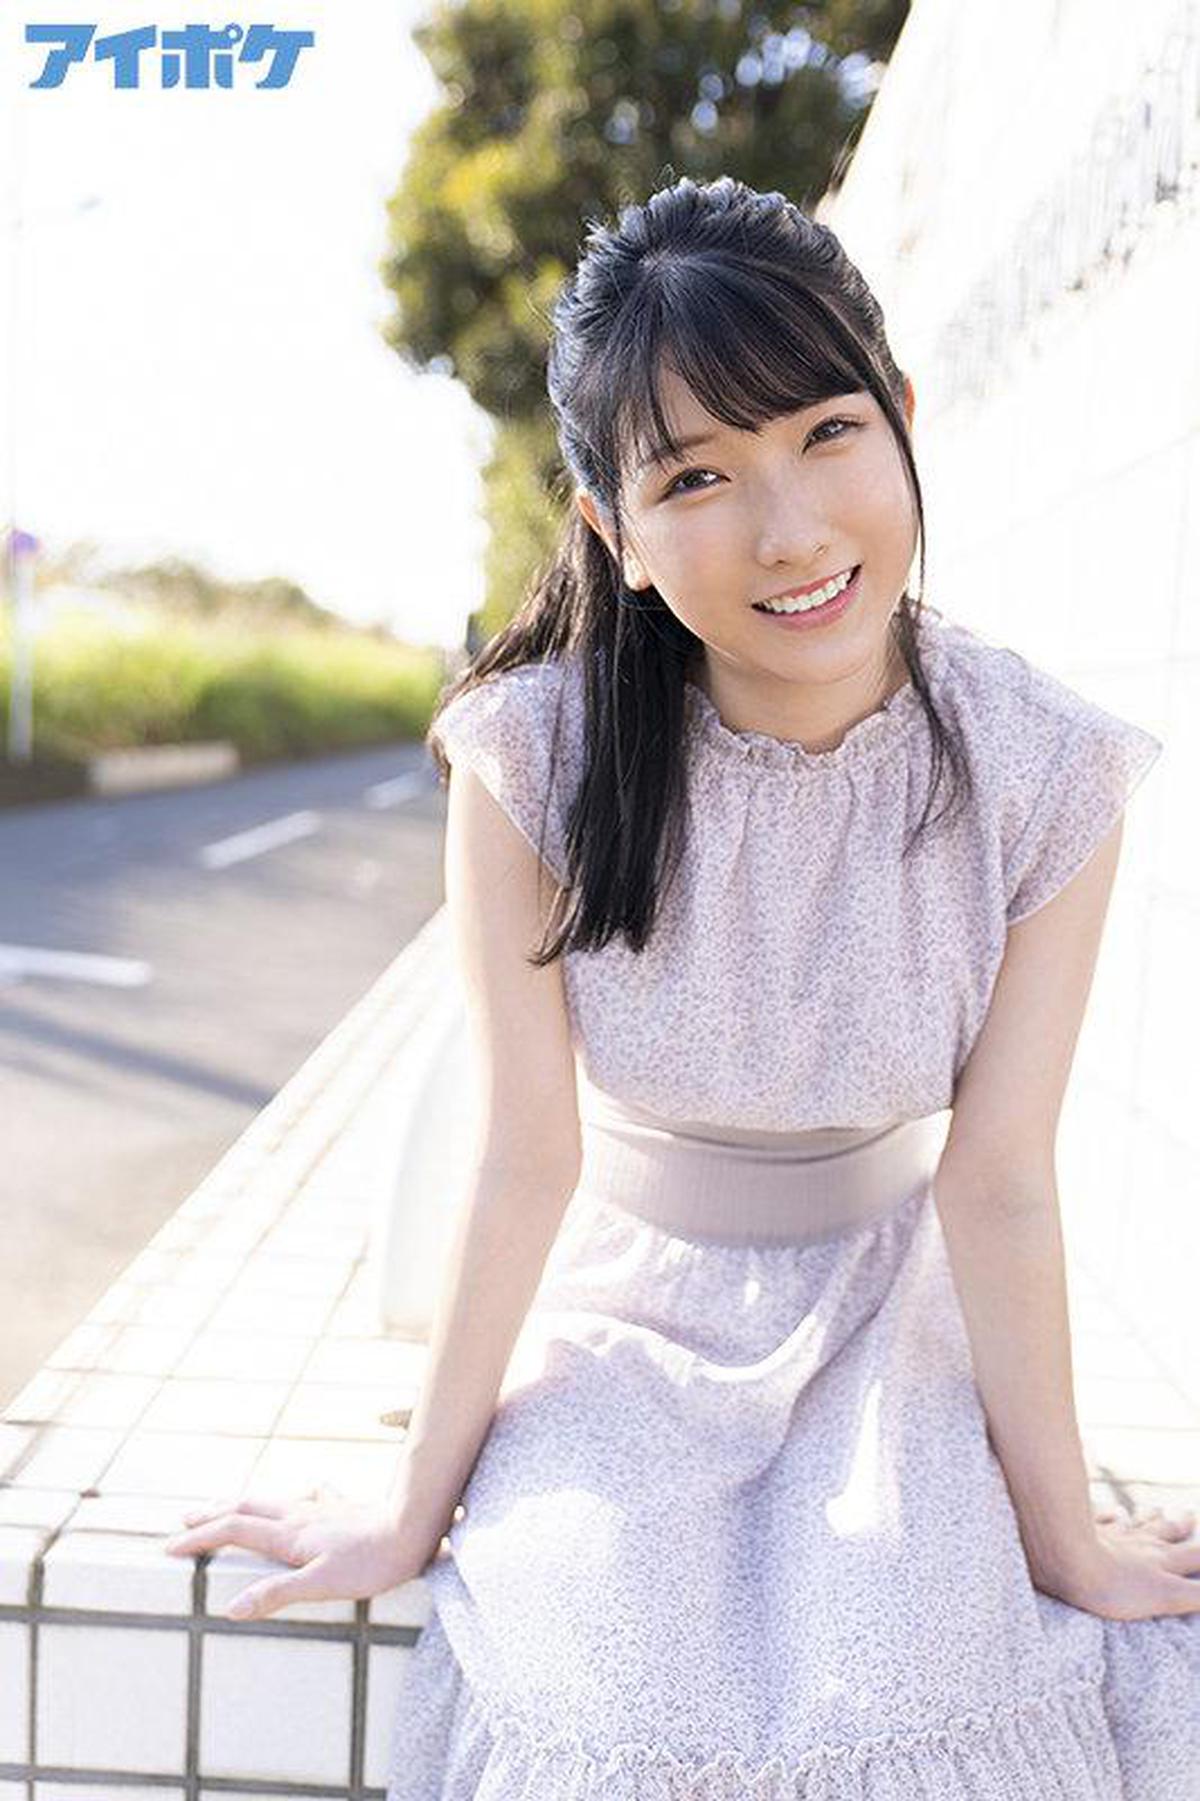 IPX-787 PRIMEIRA IMPRESSÃO 152 Linda irmã peituda com o sorriso mais fofo Hikaru Miyanishi